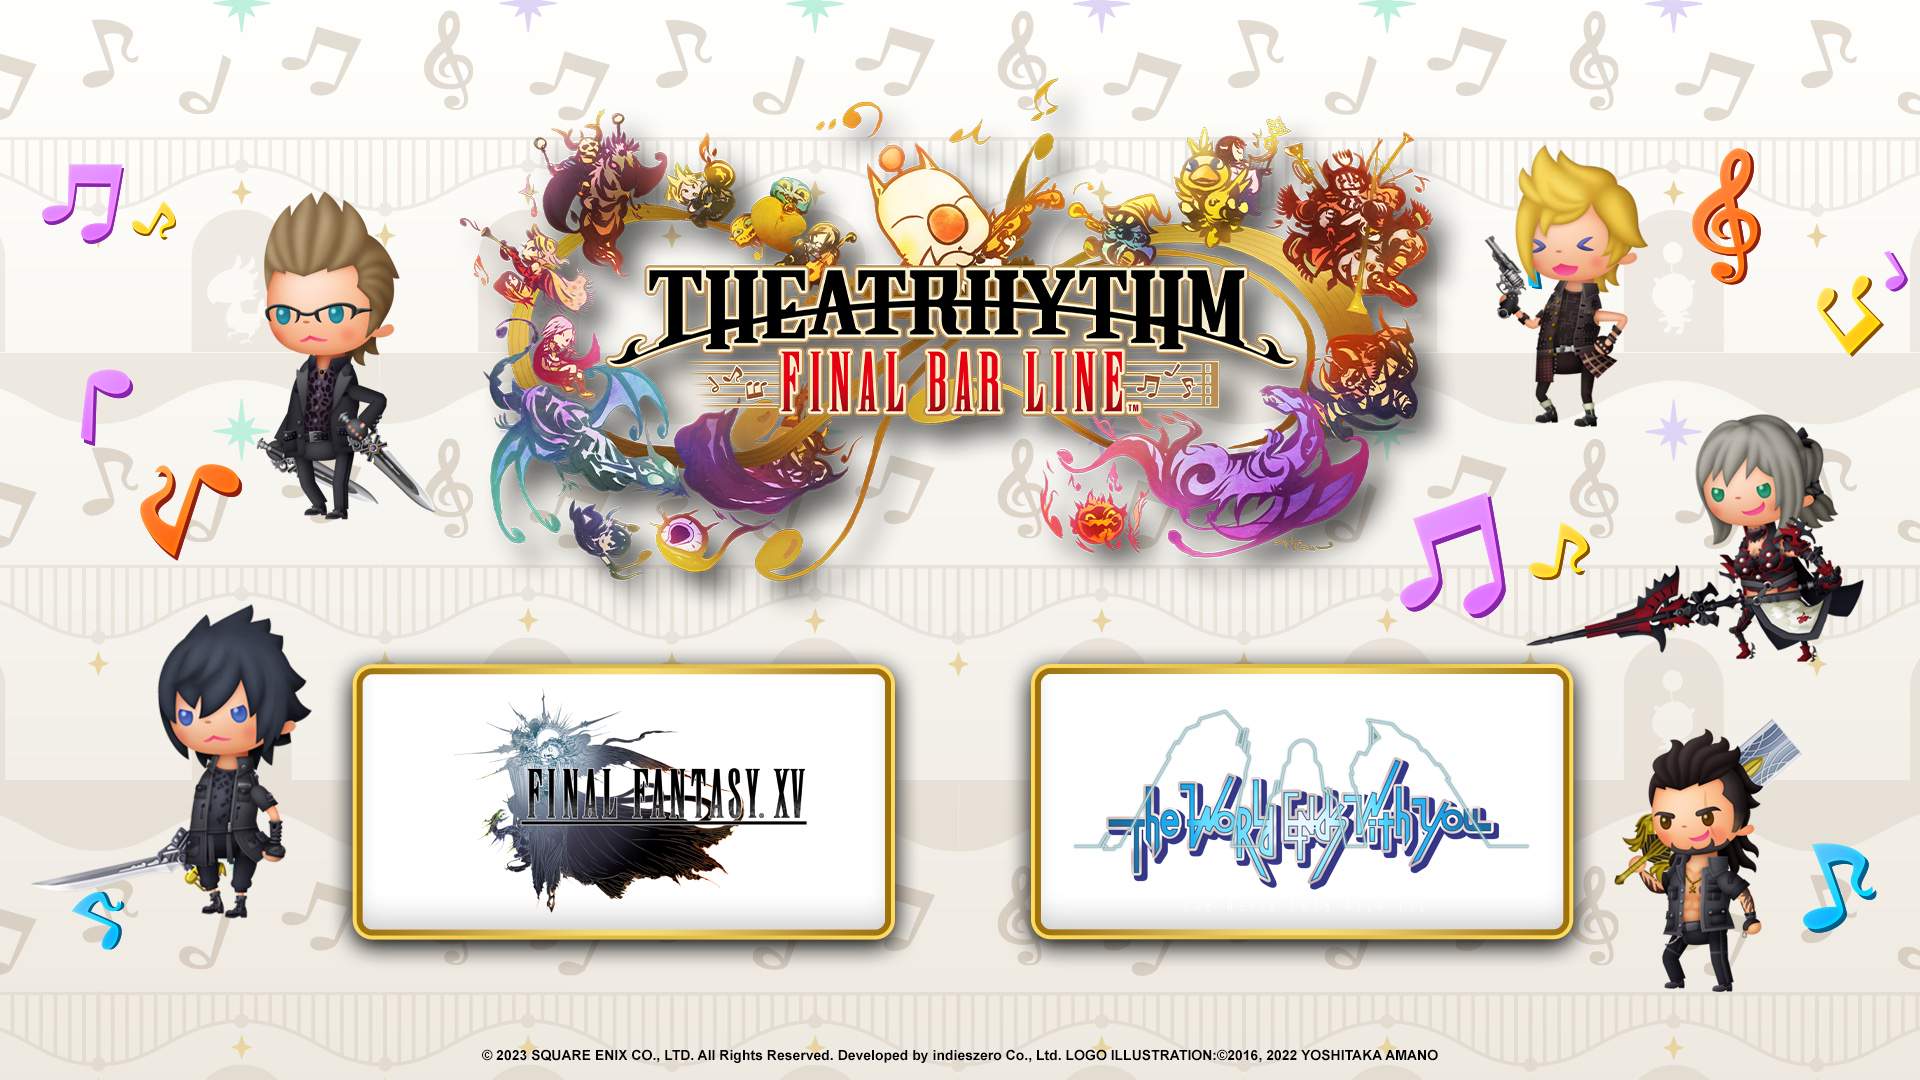 Music Of Final Fantasy X, spira, jecht, characters Of Final Fantasy X And  X2, final Fantasy Xi, tidus, dissidia Final Fantasy NT, yuna, Dissidia 012 Final  Fantasy, final Fantasy X